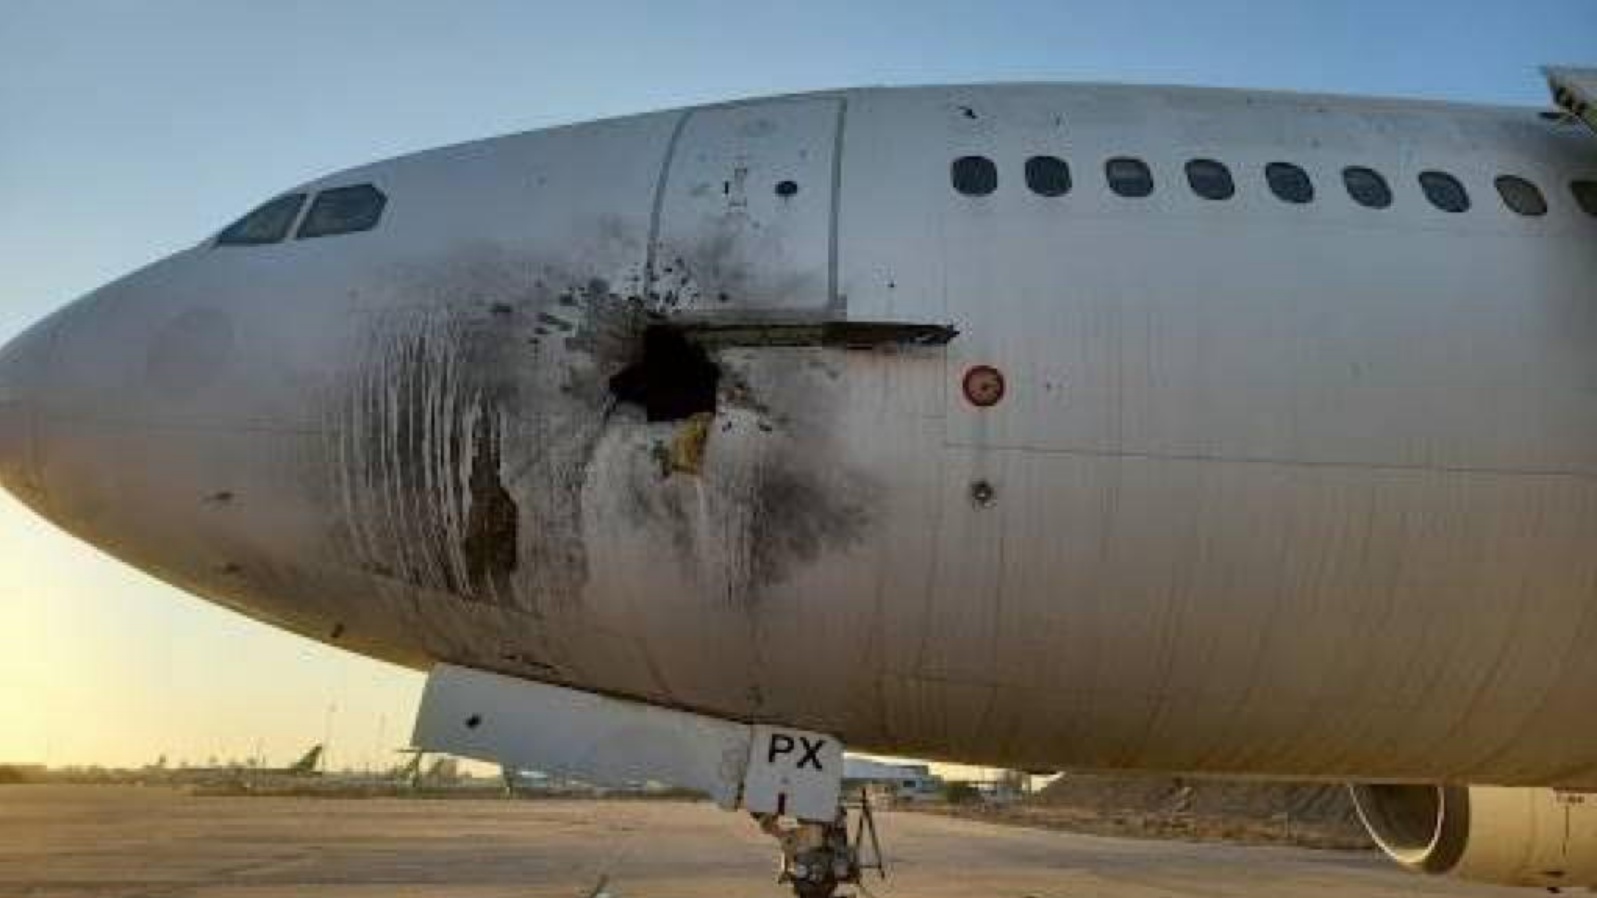 طائرة مدنية عراقية في مطار بغداد الدولي أُصيبت بصاروخ لمليشيا عراقية قصفت المطار بستة صواريخ في يناير 2022 واعلن اليوم 7 أغسطس 2022 عن إدانة أربعة من المتهمين بالقصف بالسجن المؤبد (تويتر)